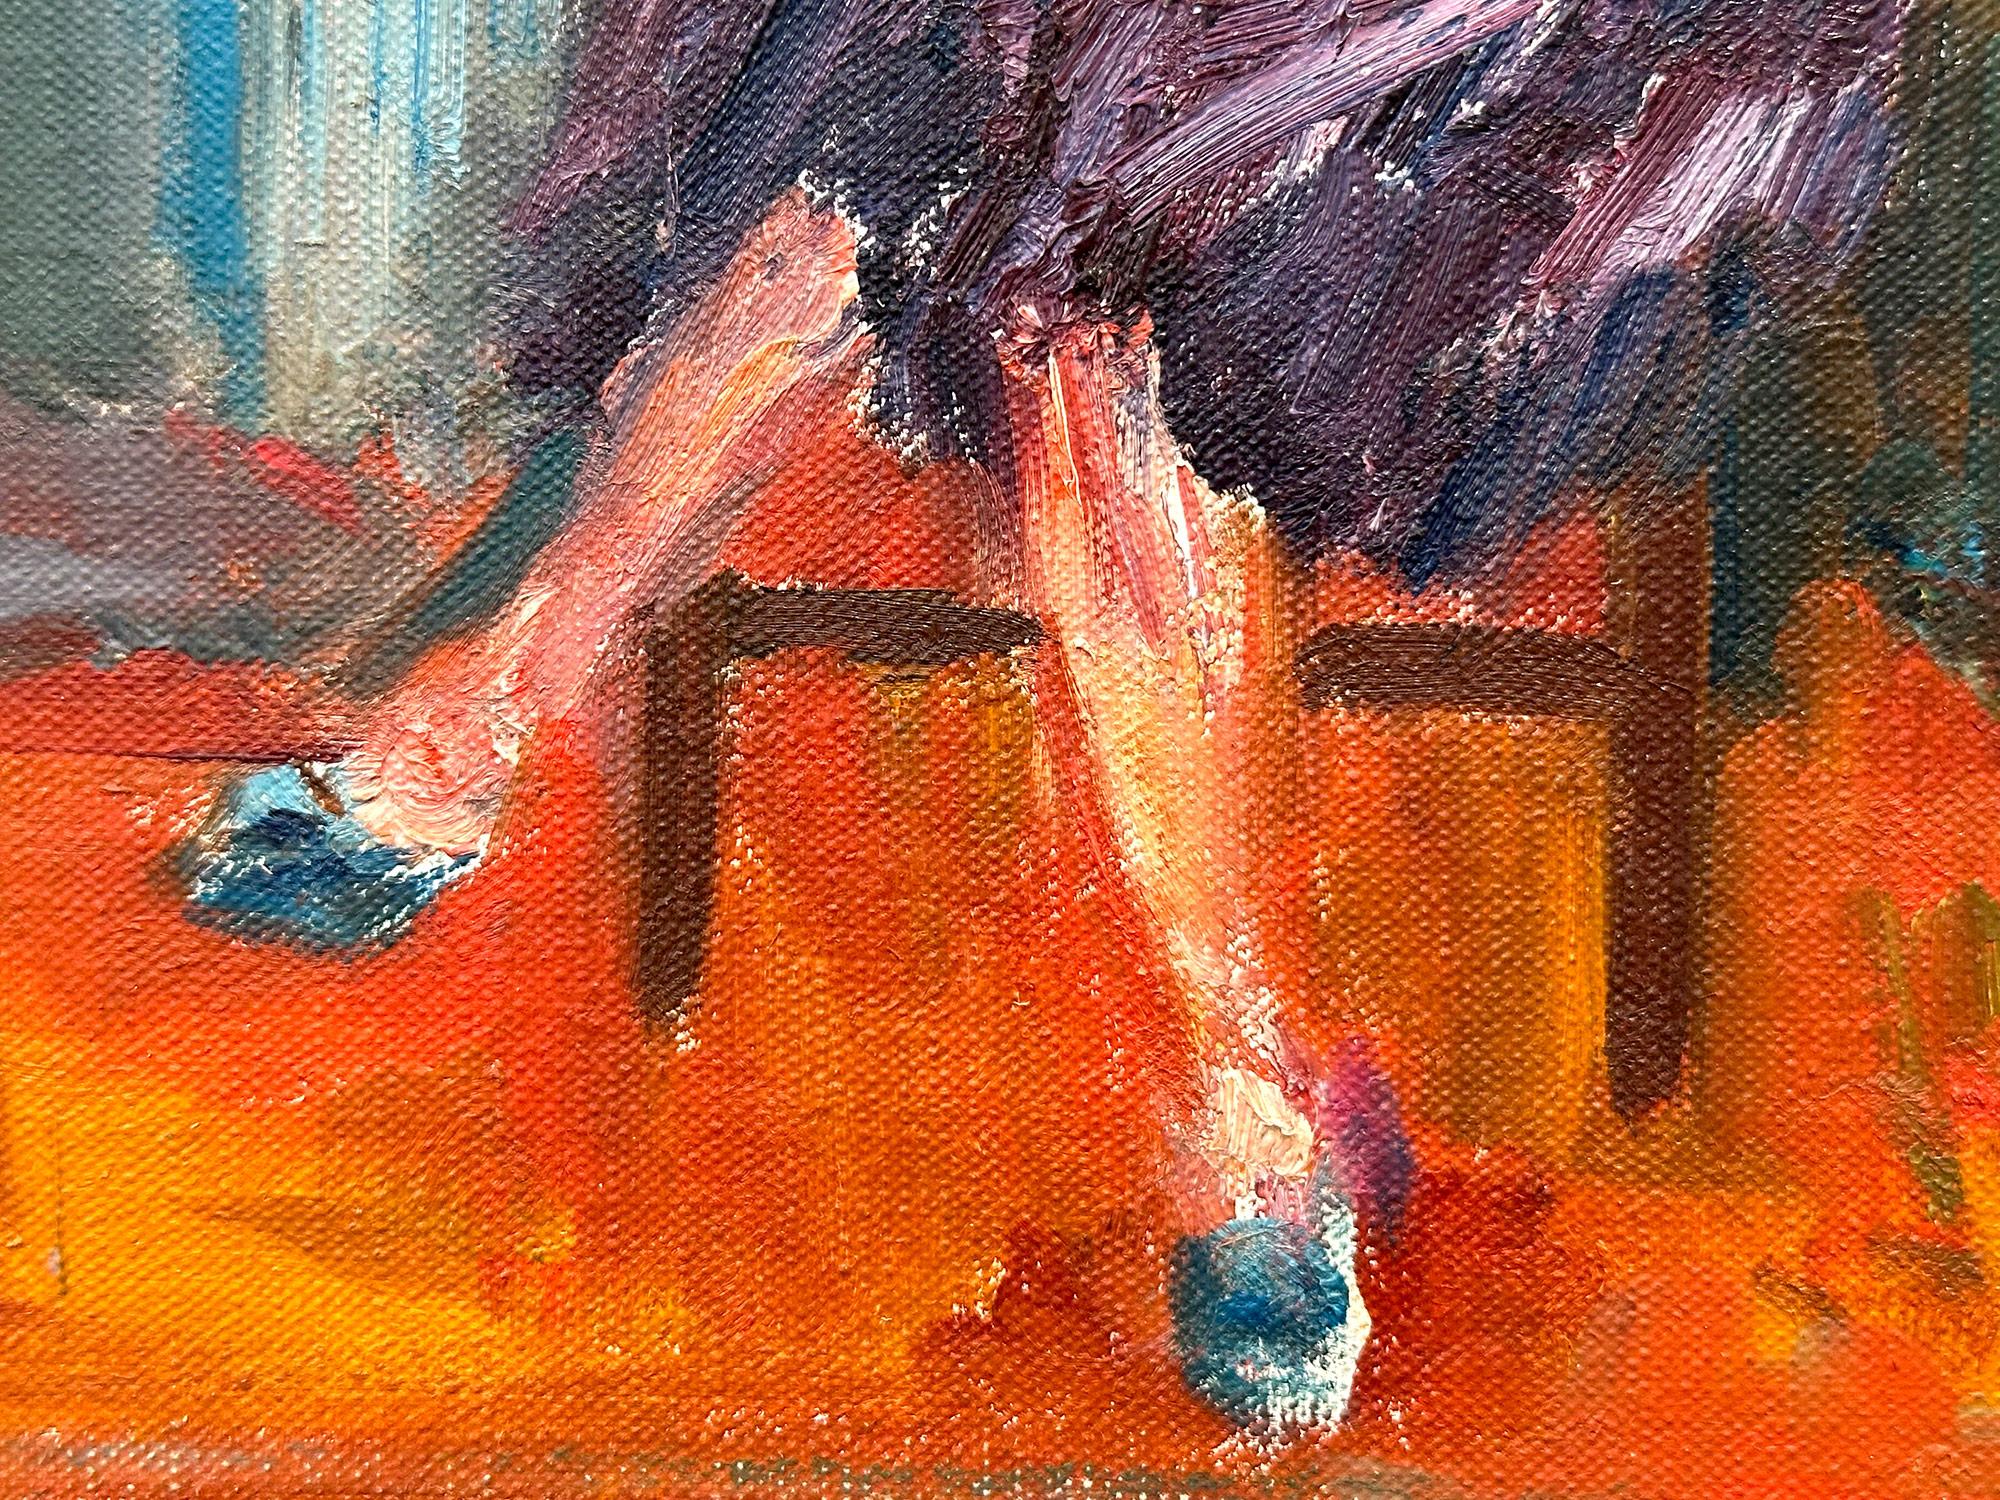 Charmante peinture à l'huile représentant une scène d'intérieur d'une femme élégante croisant les jambes, allongée sur une chaise.  Elle dégage un calme tandis que l'on sent la brise passer à travers les rideaux de la fenêtre. La cheminée et la